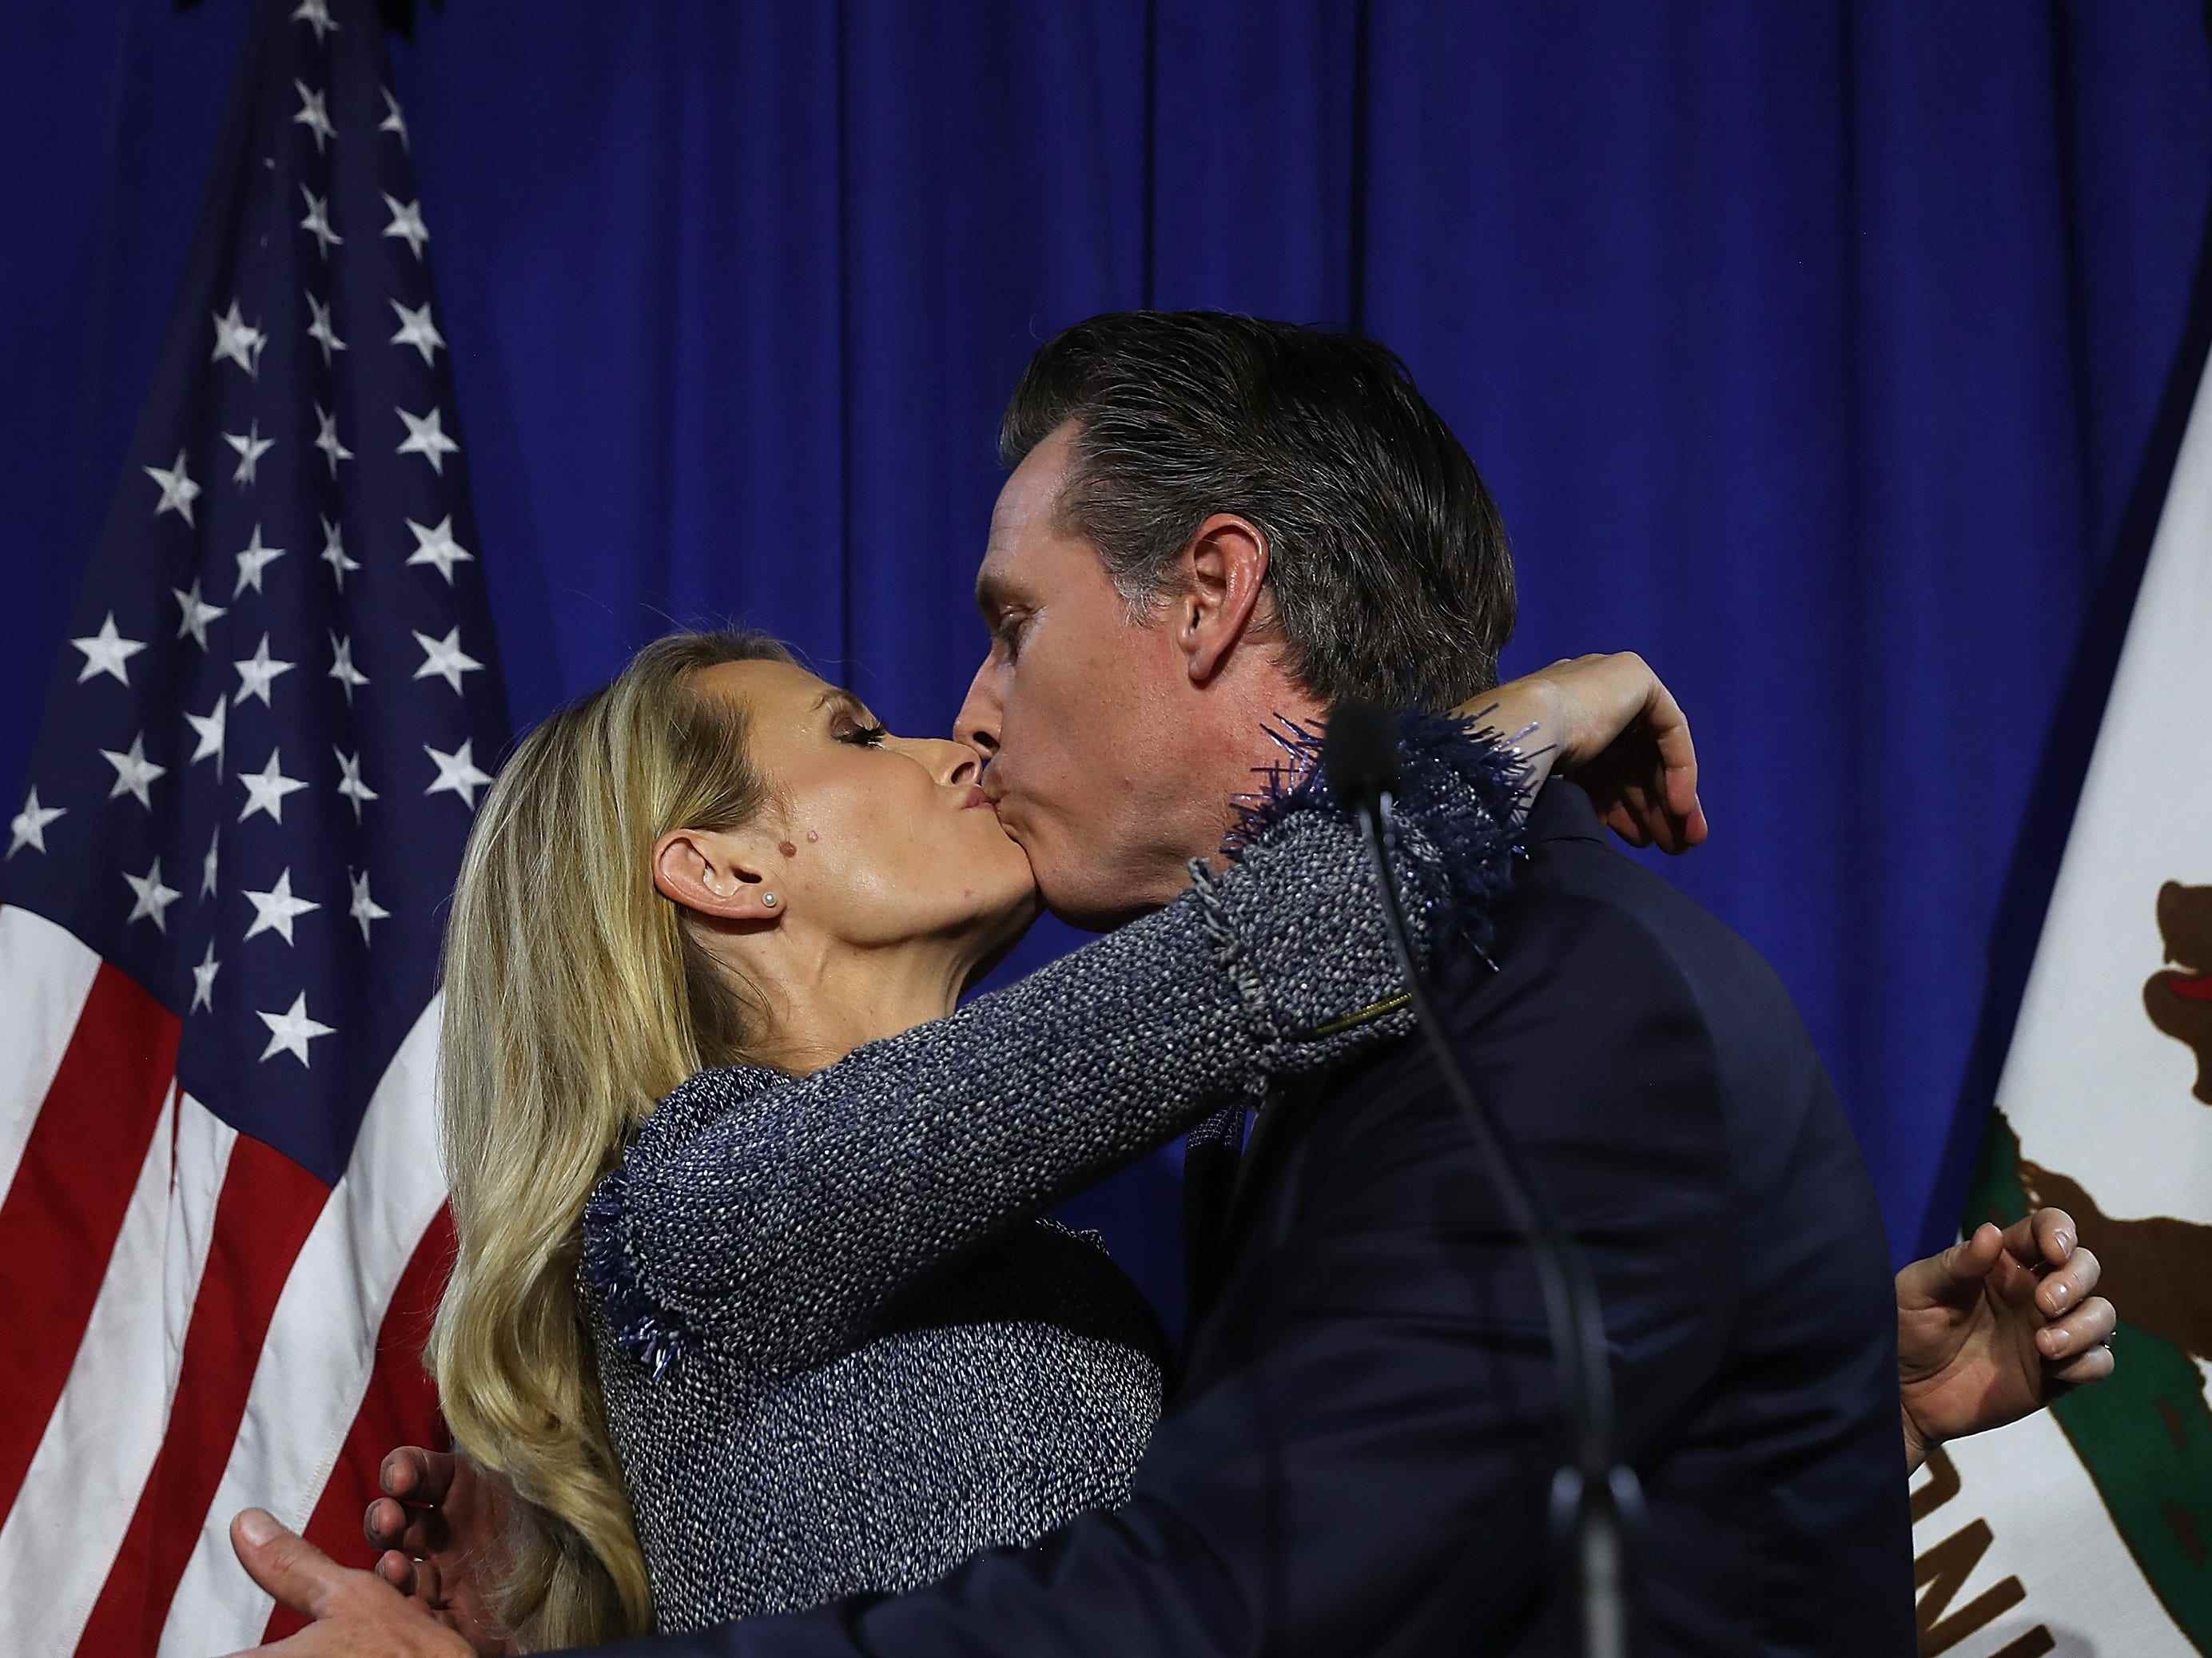 Jennifer Siebel Newsom und Gavin Newsom küssen sich vor einer amerikanischen Flagge.